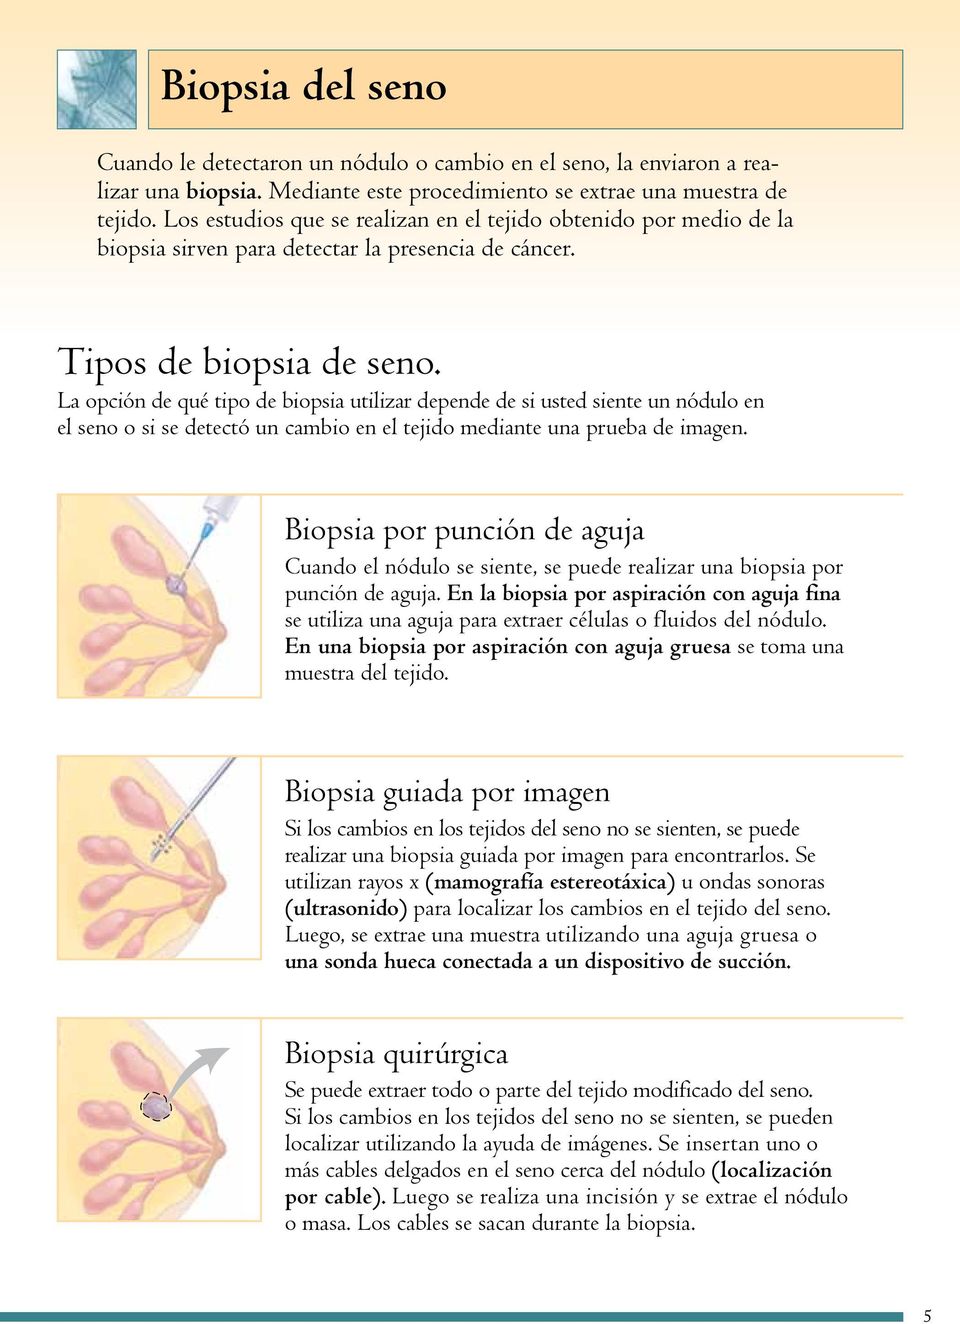 La opción de qué tipo de biopsia utilizar depende de si usted siente un nódulo en el seno o si se detectó un cambio en el tejido mediante una prueba de imagen.